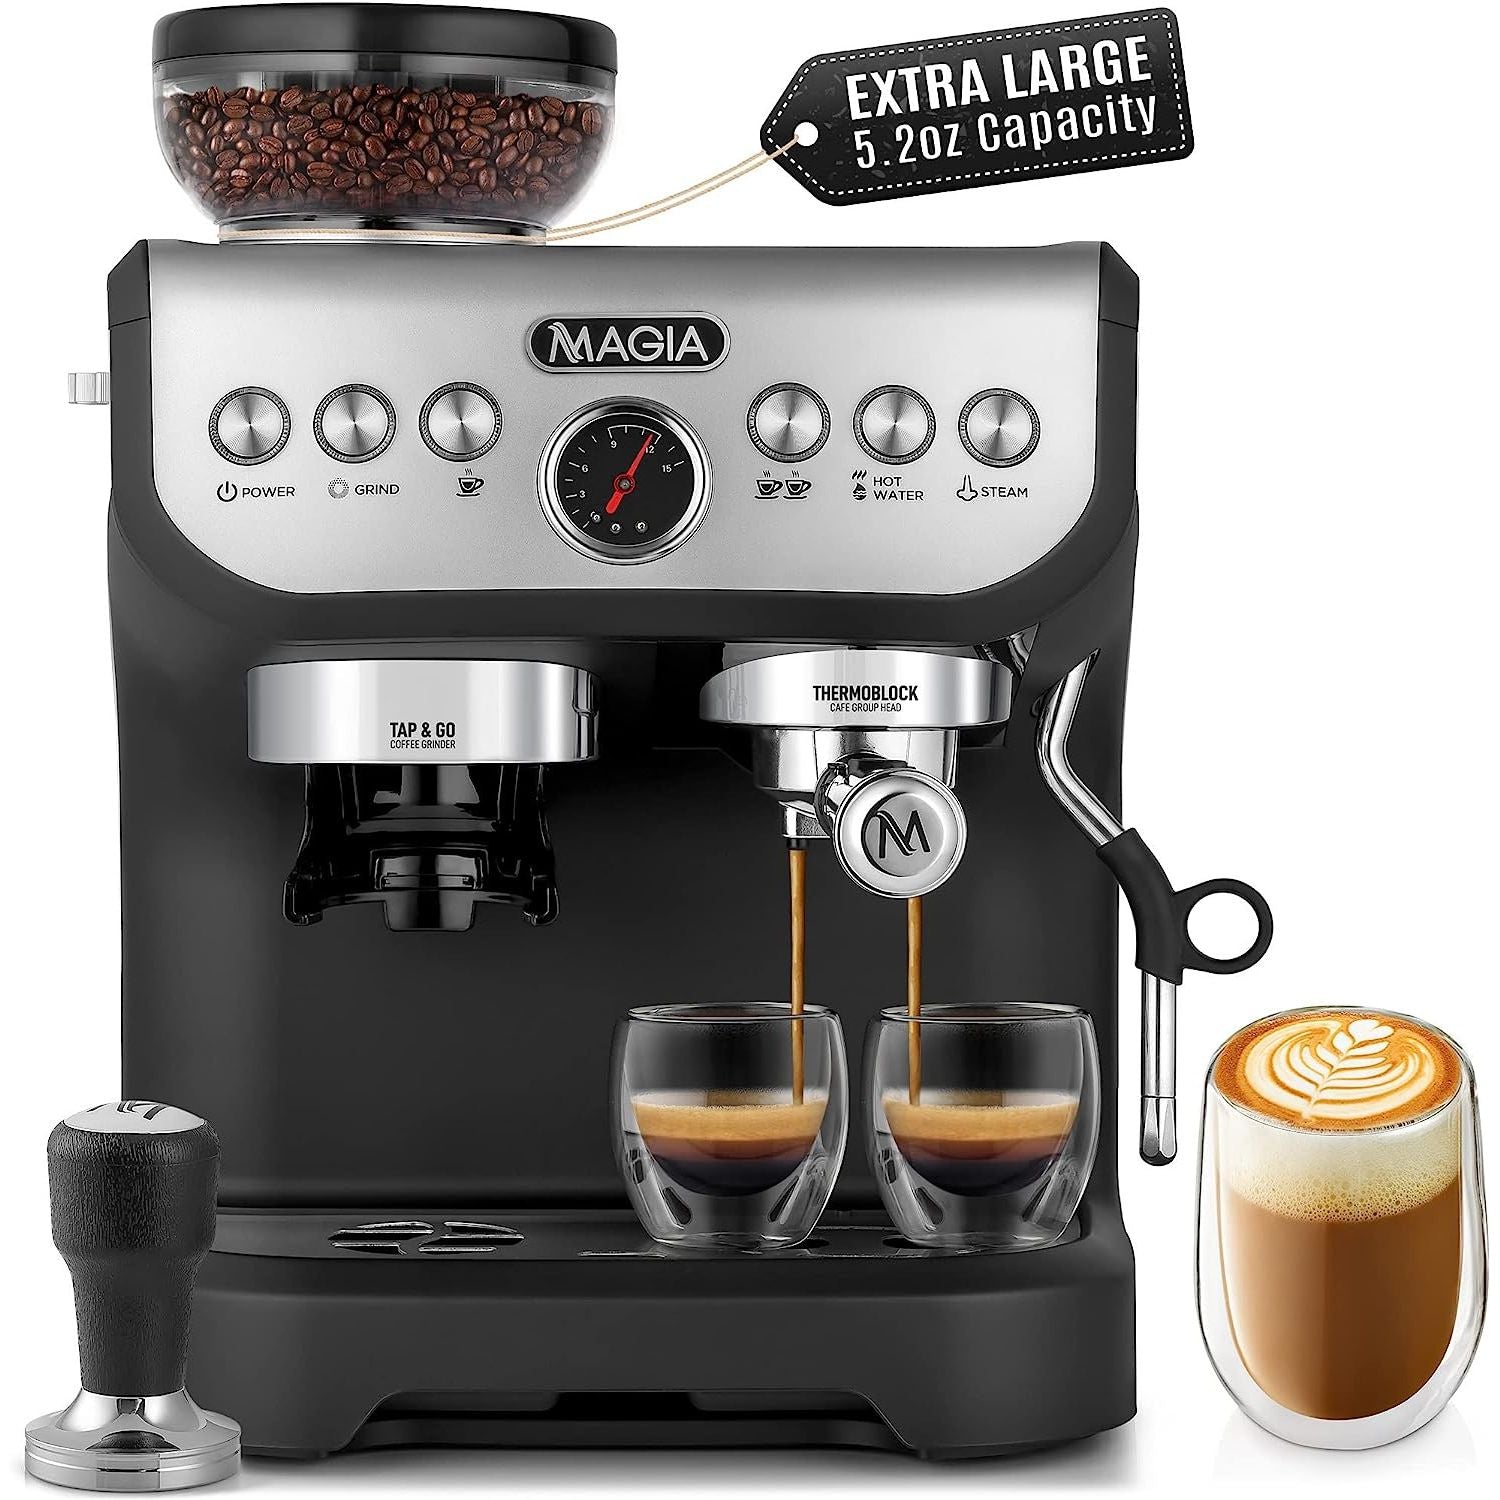  Zulay Magia - Máquina de café espresso súper automática -  Máquina de café espresso duradera con molinillo - Cafetera con pantalla  táctil de 7 pulgadas fácil de usar, 19 recetas de